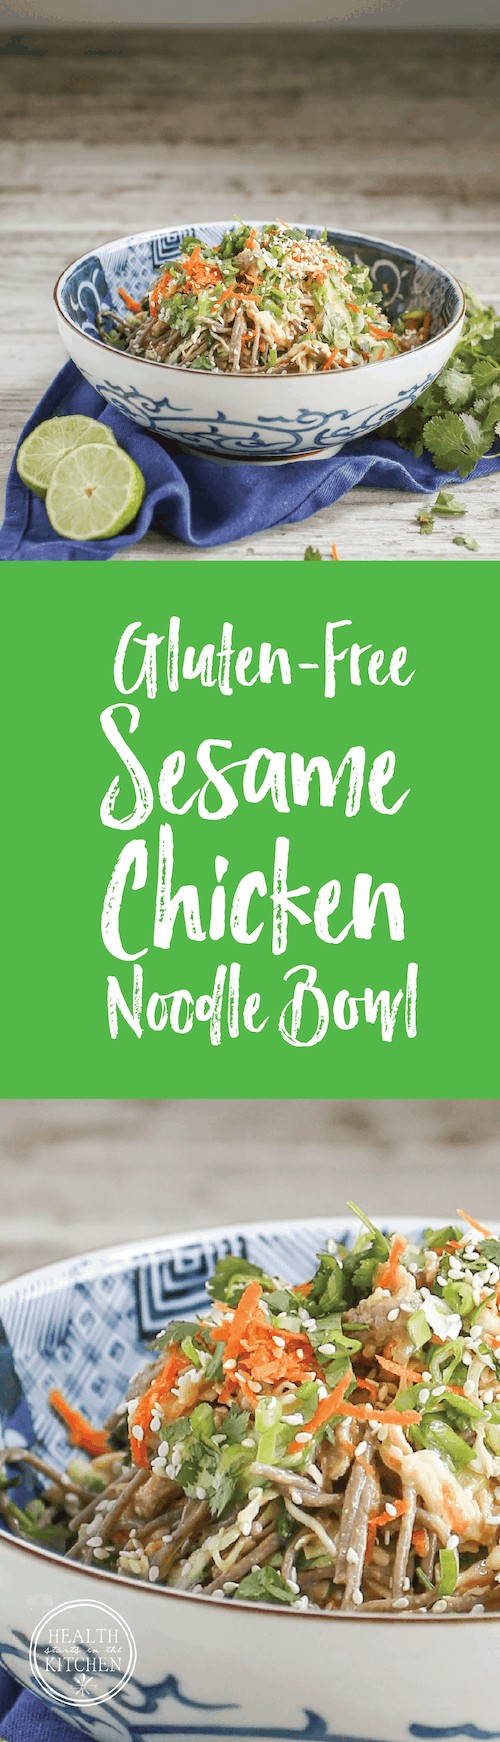 Sesame Chicken Noodle Bowl {Gluten Free}